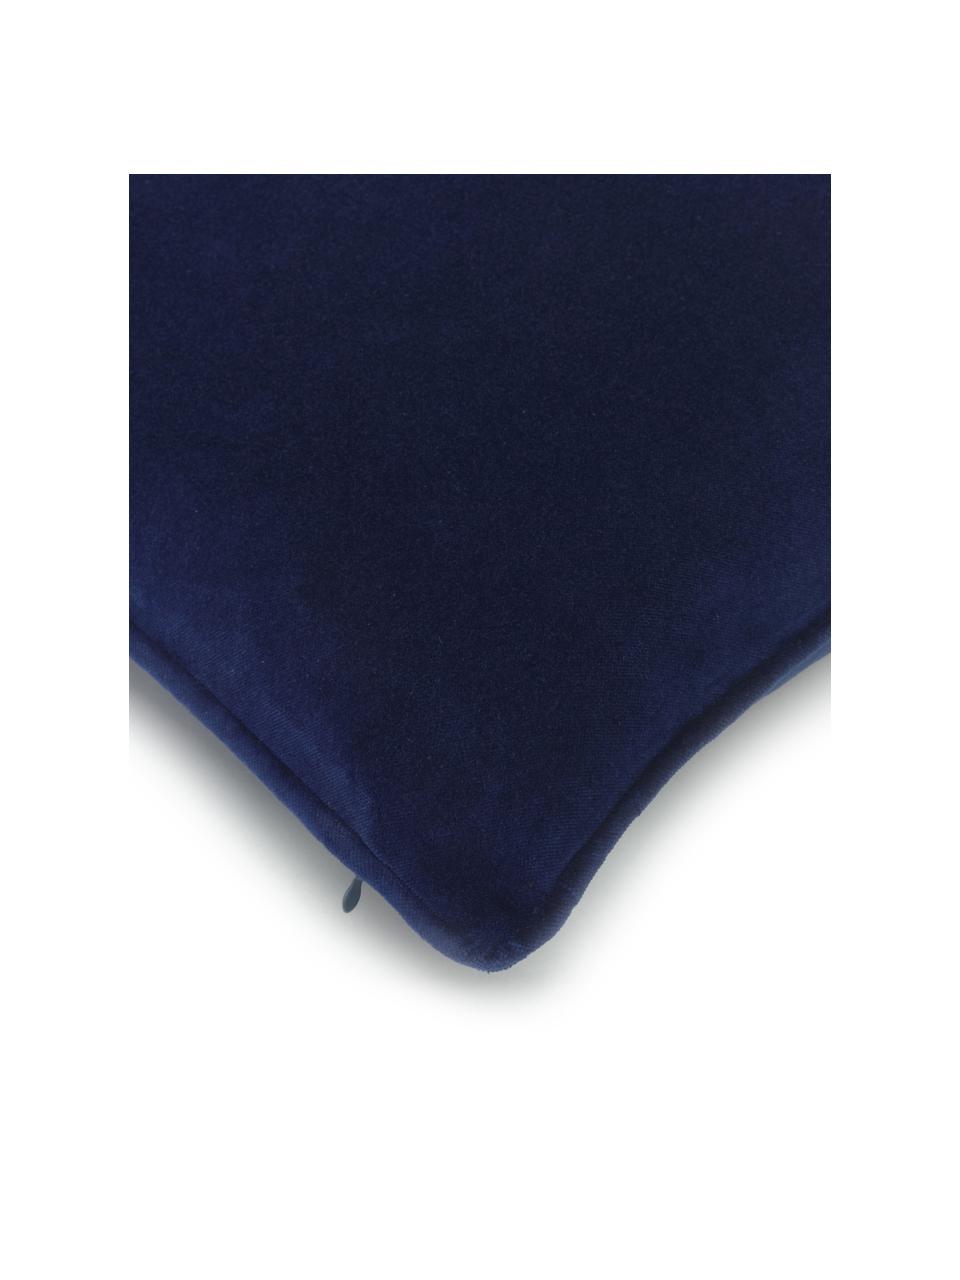 Effen fluwelen kussenhoes Dana in marineblauw, 100% katoenfluweel, Marineblauw, B 30 x L 50 cm